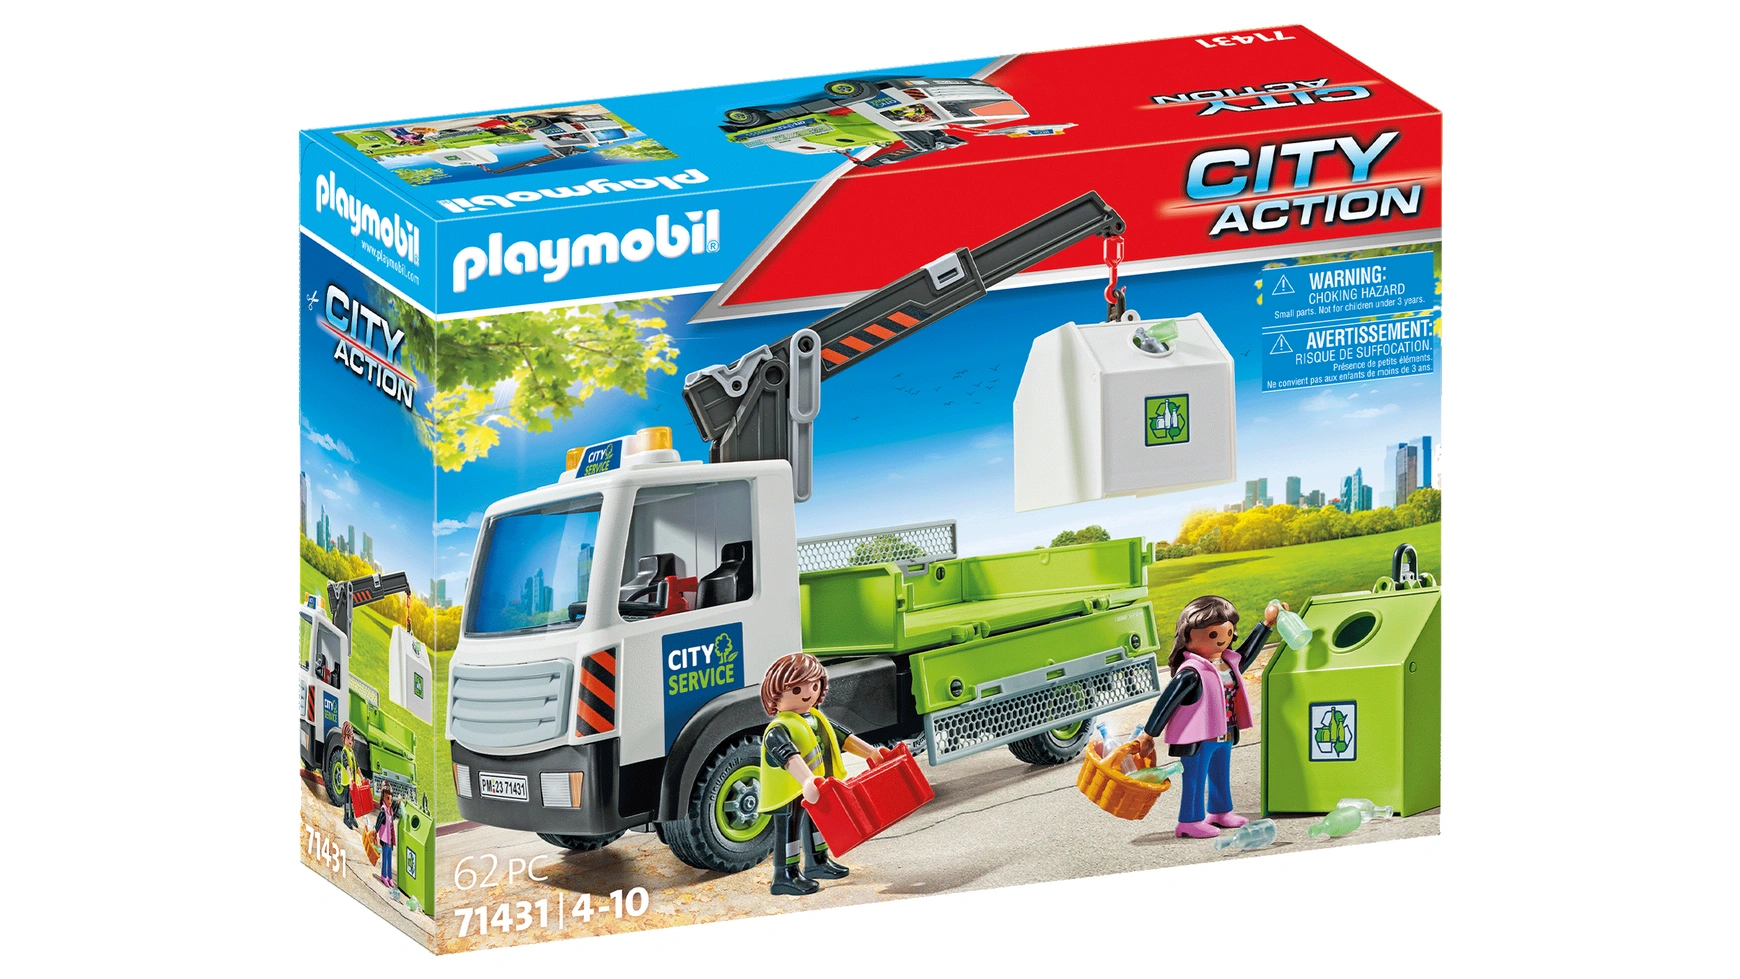 City action грузовик для мусора с контейнером Playmobil набор с элементами конструктора playmobil city action 9364 грузовик амфибия